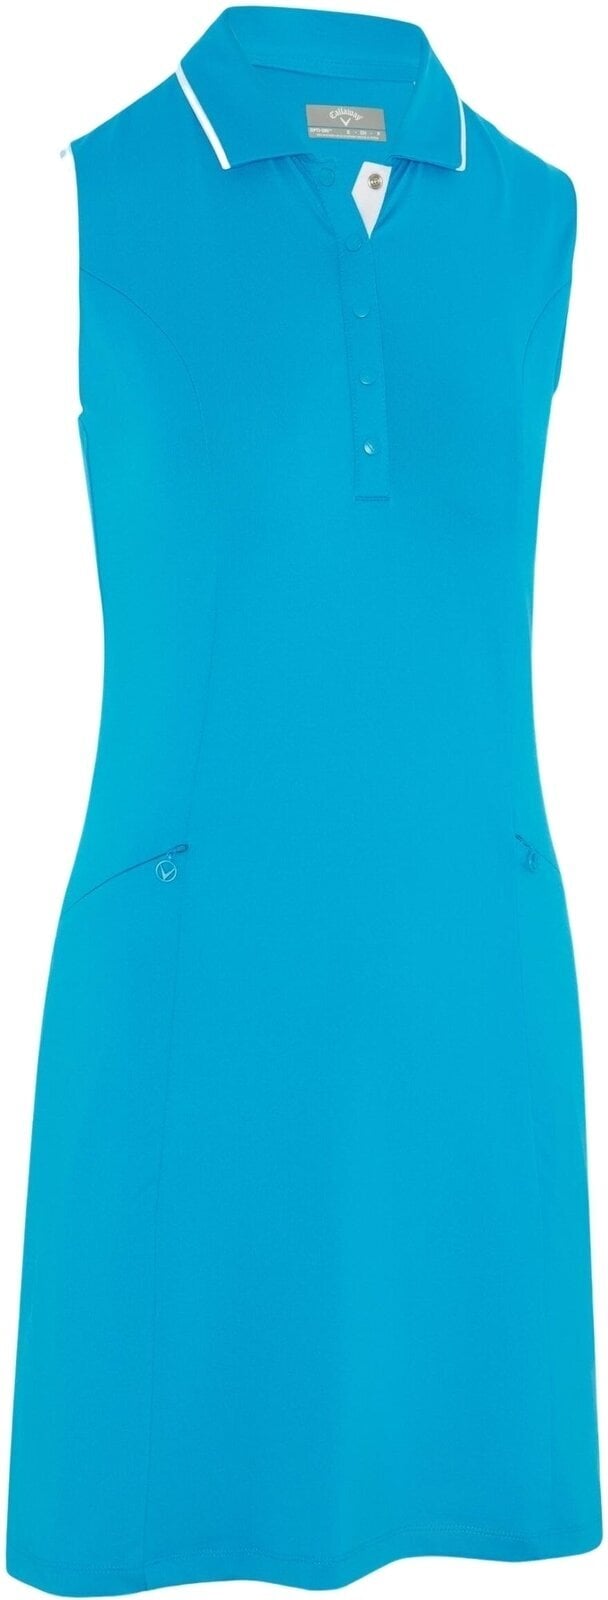 Saia/Vestido Callaway Womens Sleeveless Dress With Snap Placket Vivid Blue S